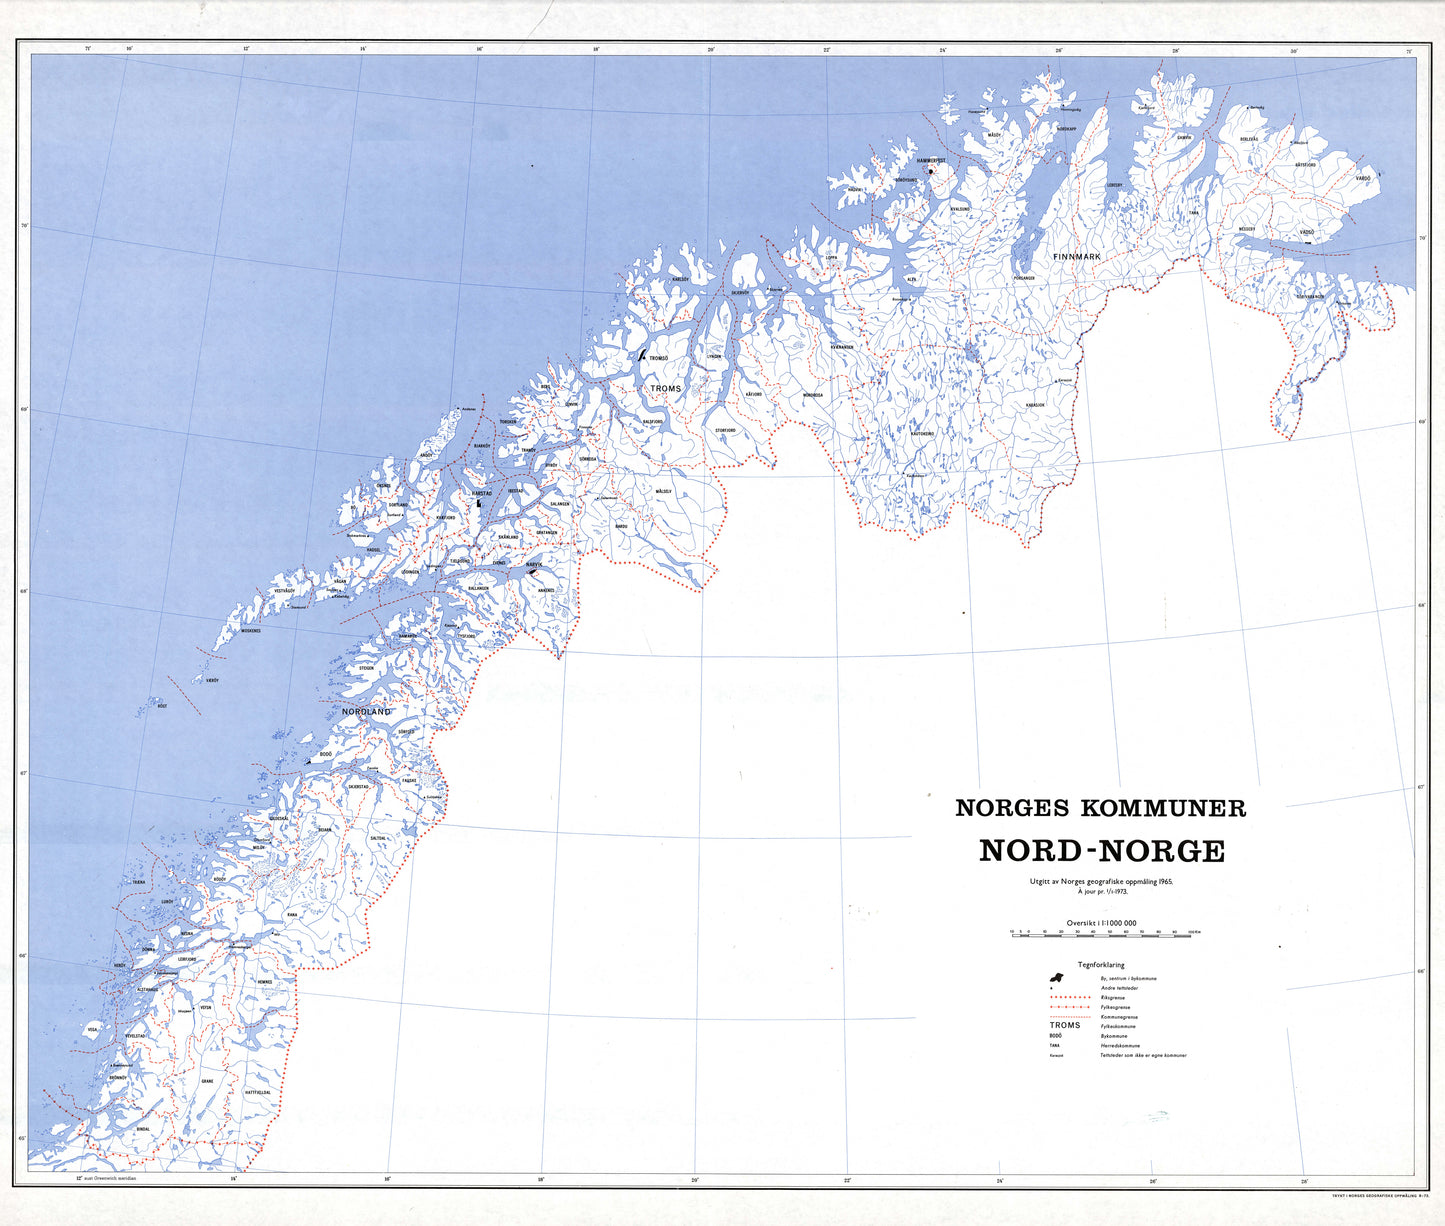 Norges kommuner Nord-Norge: Norge